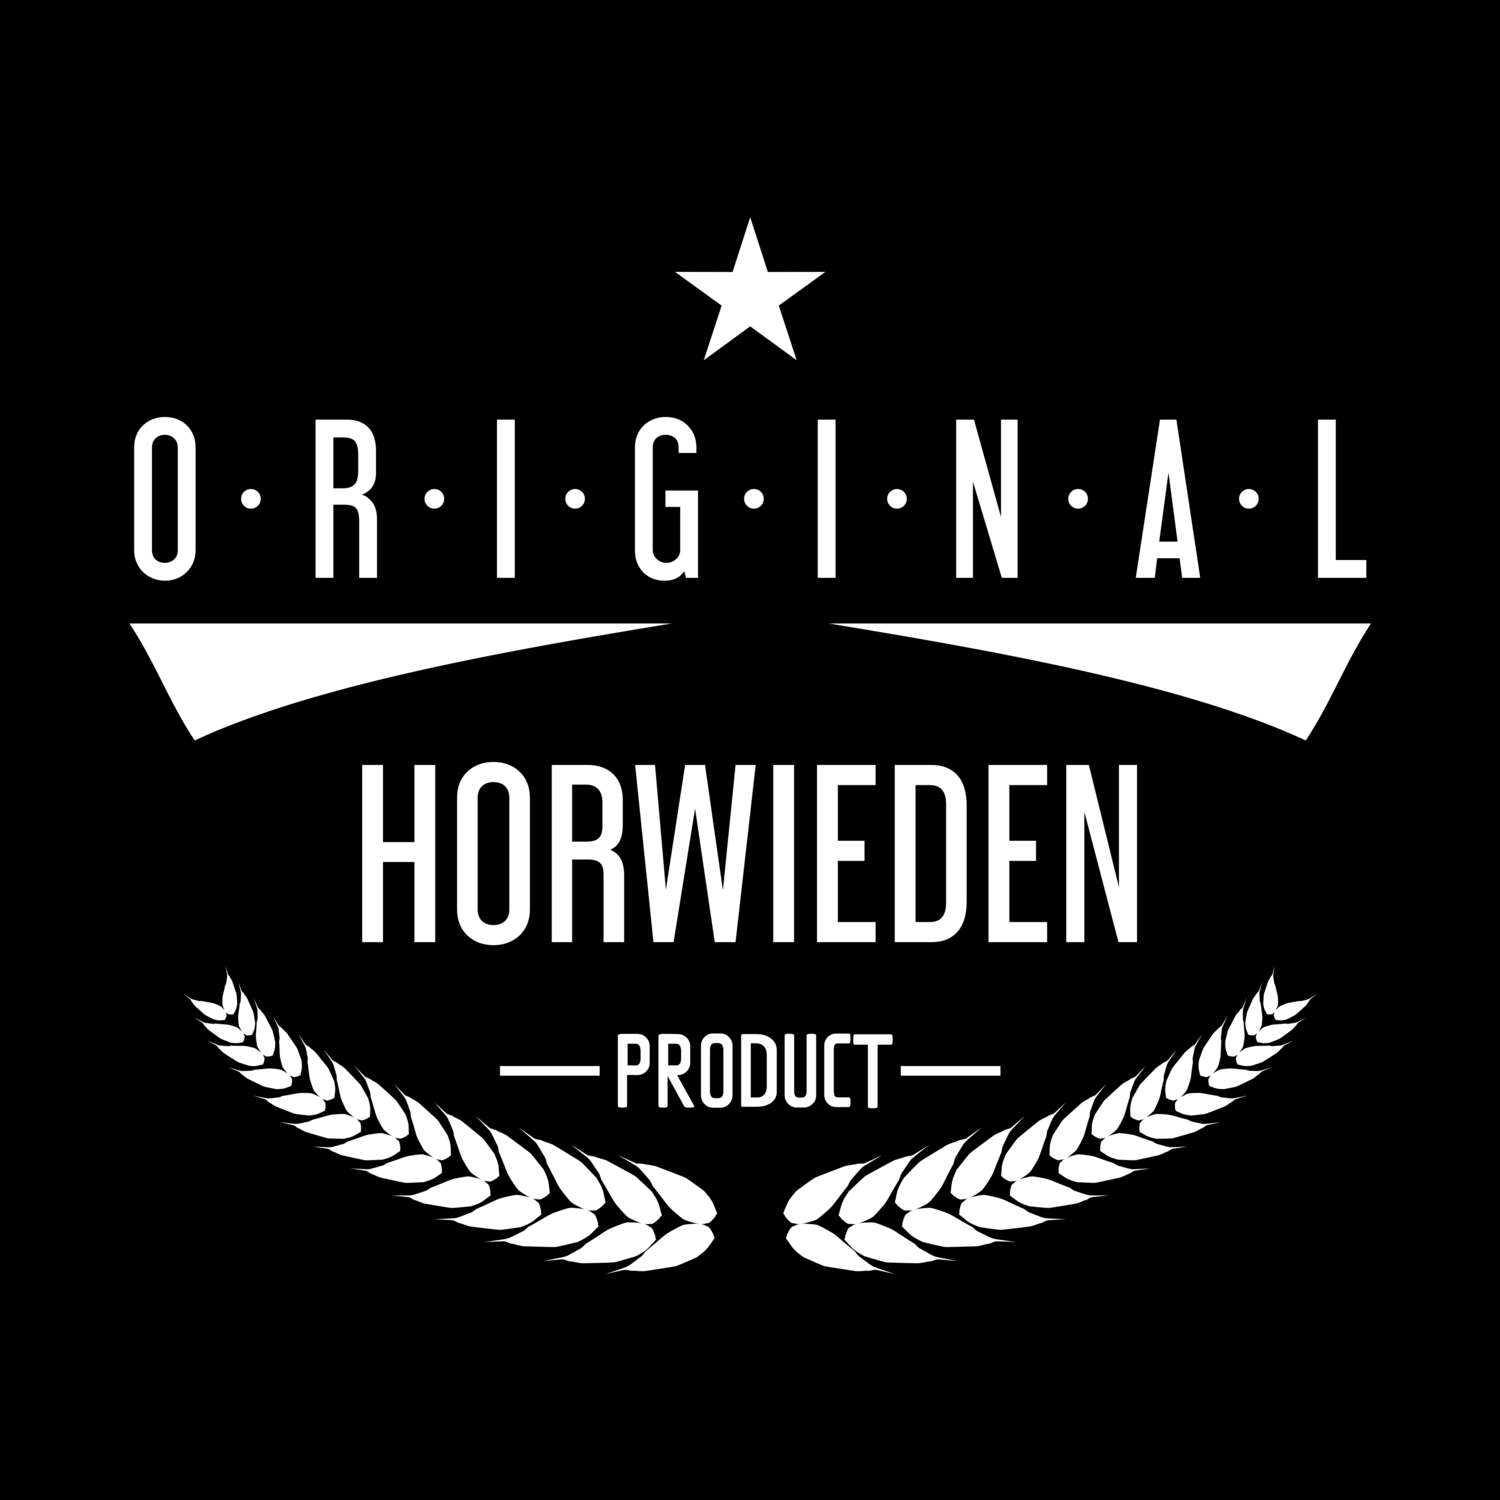 Horwieden T-Shirt »Original Product«